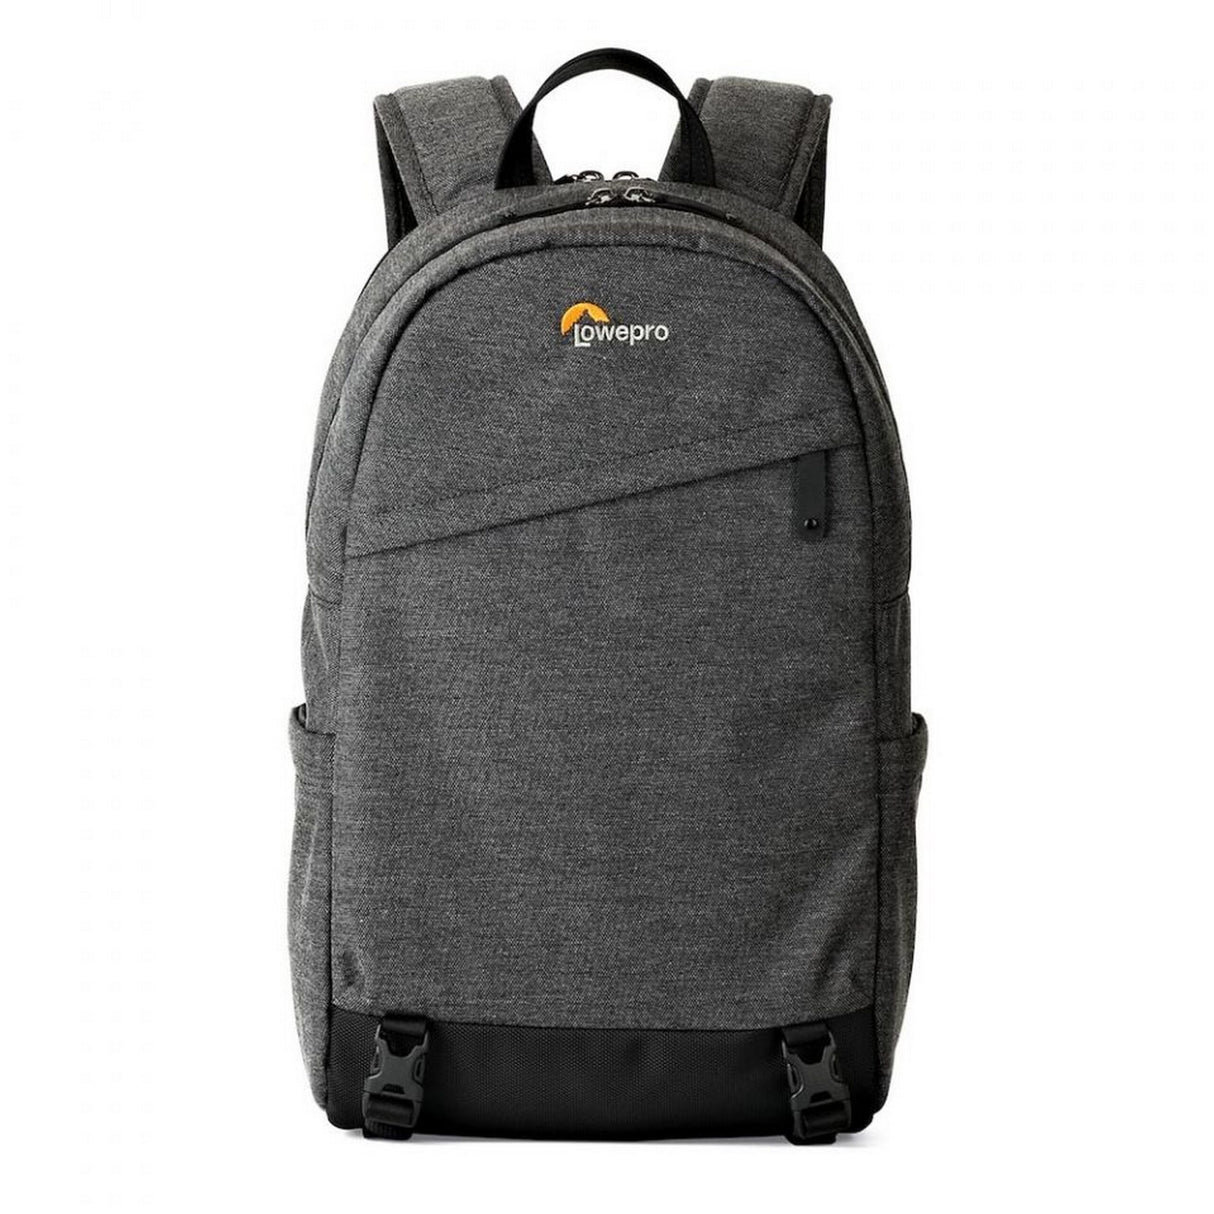 Lowepro LP37137-PWW m-Trekker BP 150 Backpack, Charcoal Grey